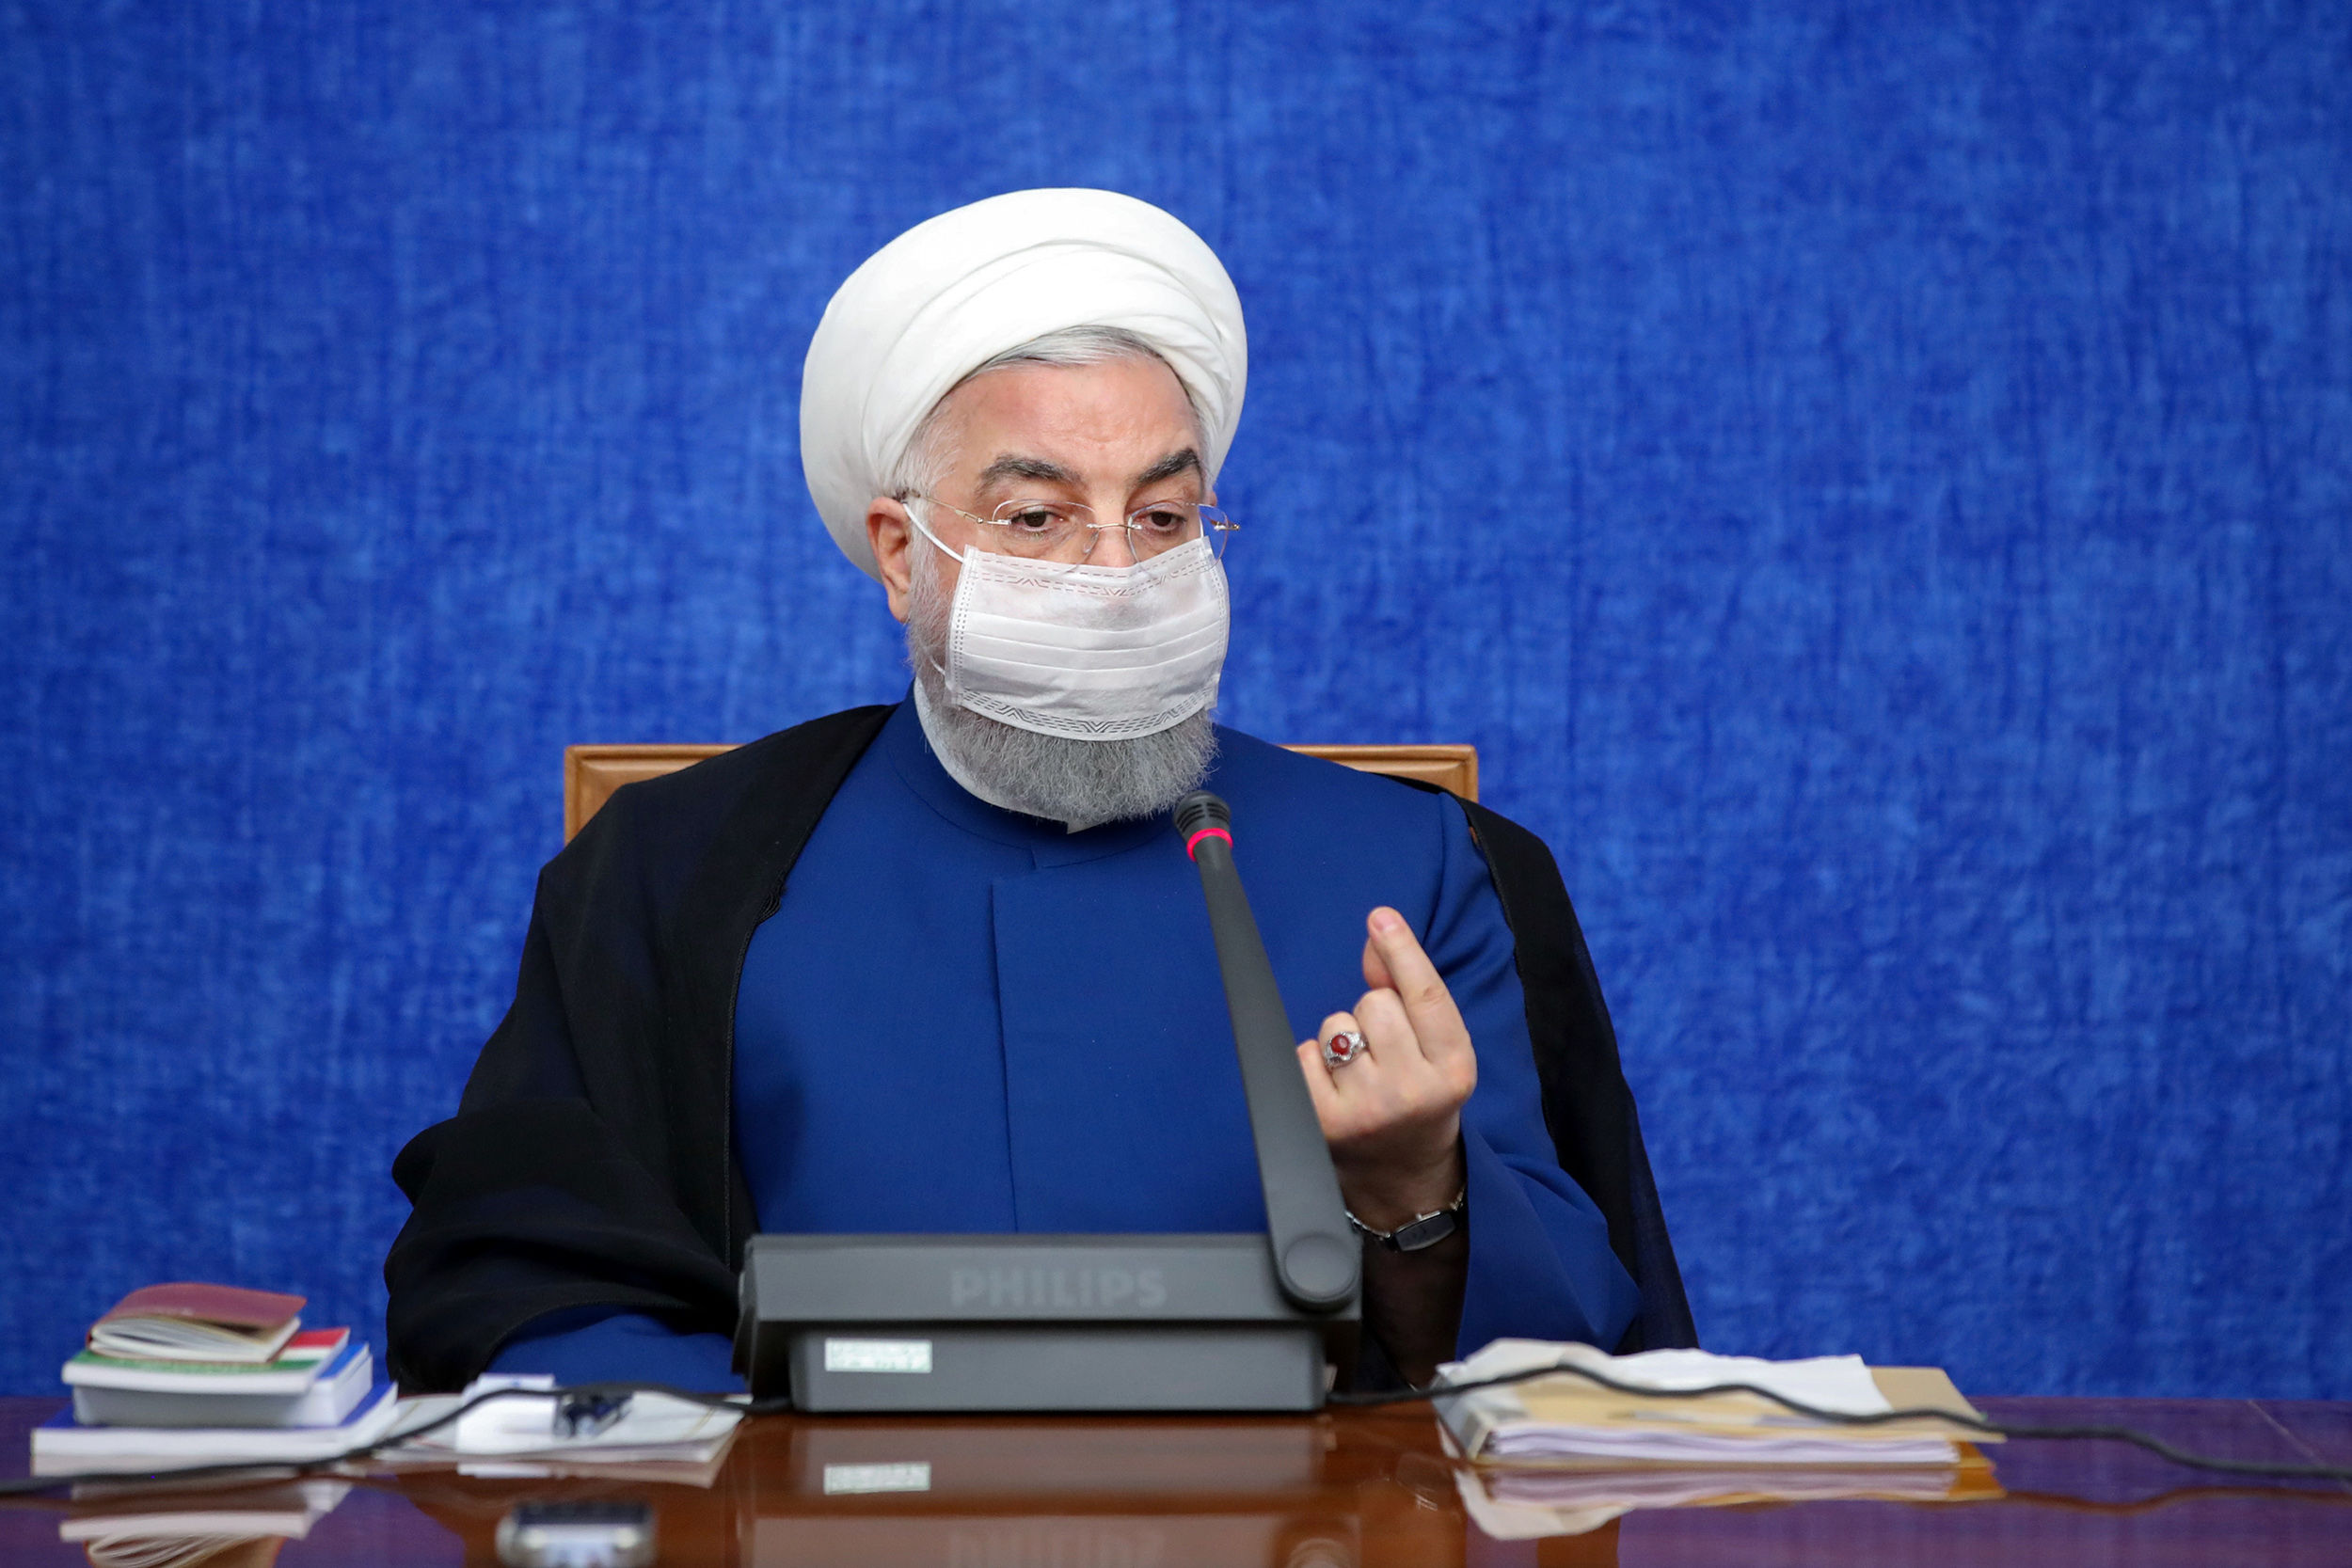  پیام مهم روحانی در روز پزشک: ایران به شما خواهد بالید که تاریخ‌ساز بوده‌اید و گره‌گشا